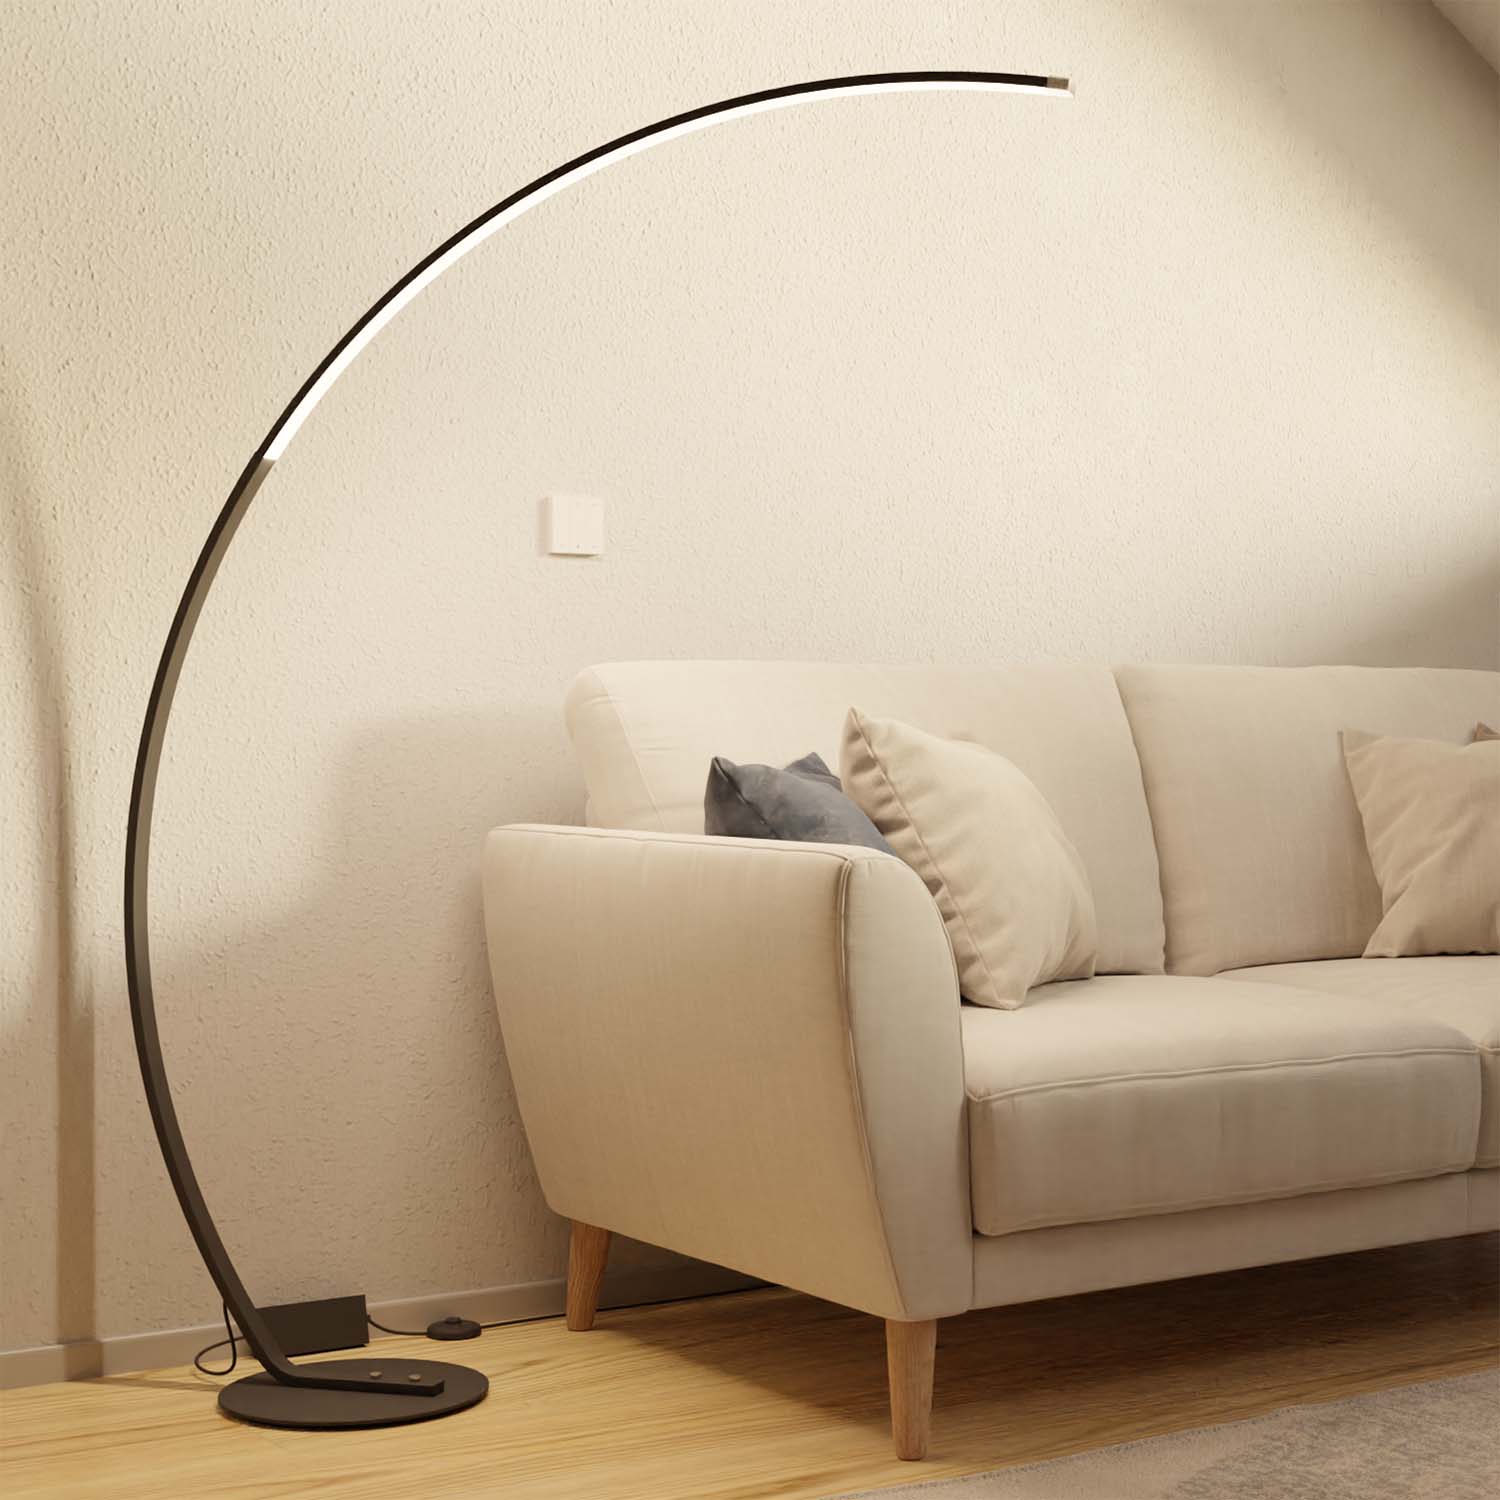 Stehlampe Bogenlampe dimmbar Leselampe Bogenstehlampe Wohn LED & Bogenleuchte Schlafzimmer